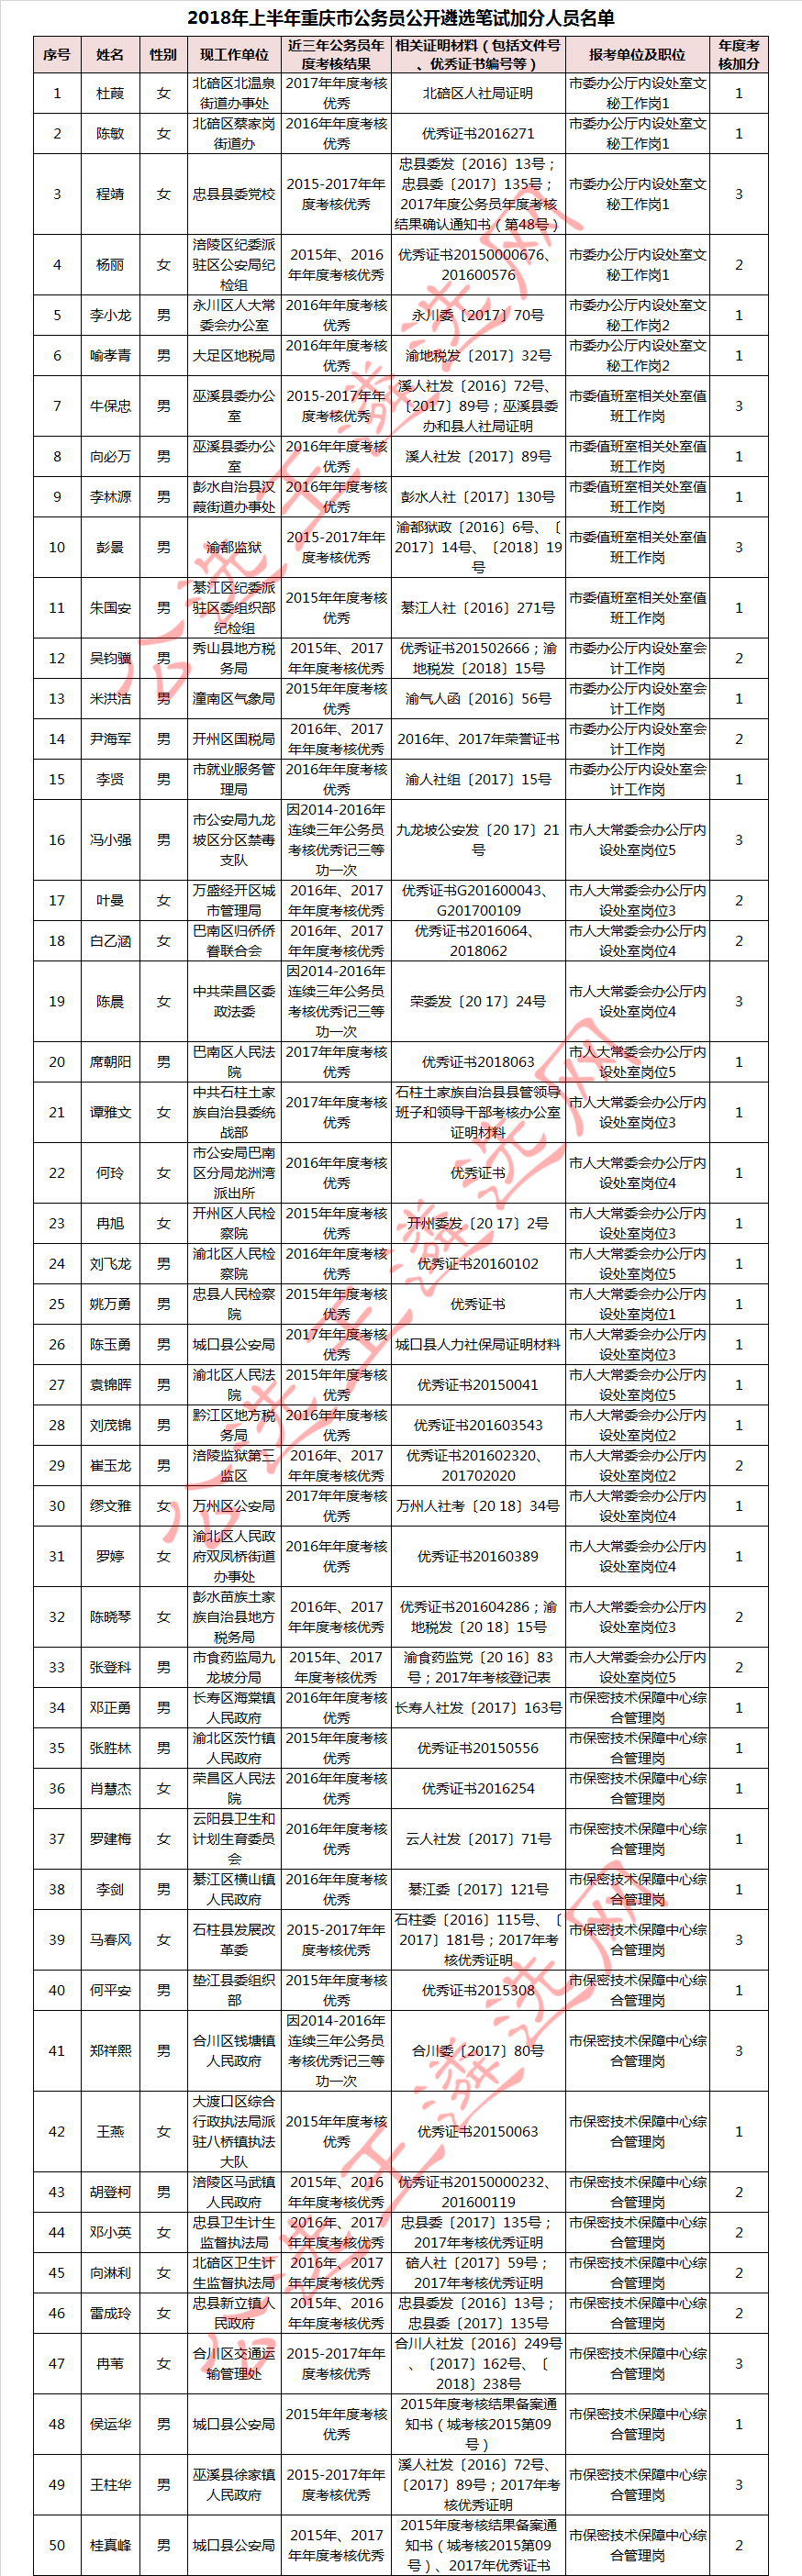 2018年上半年重庆市公务员公开遴选笔试加分人员名单1_meitu_1.jpg